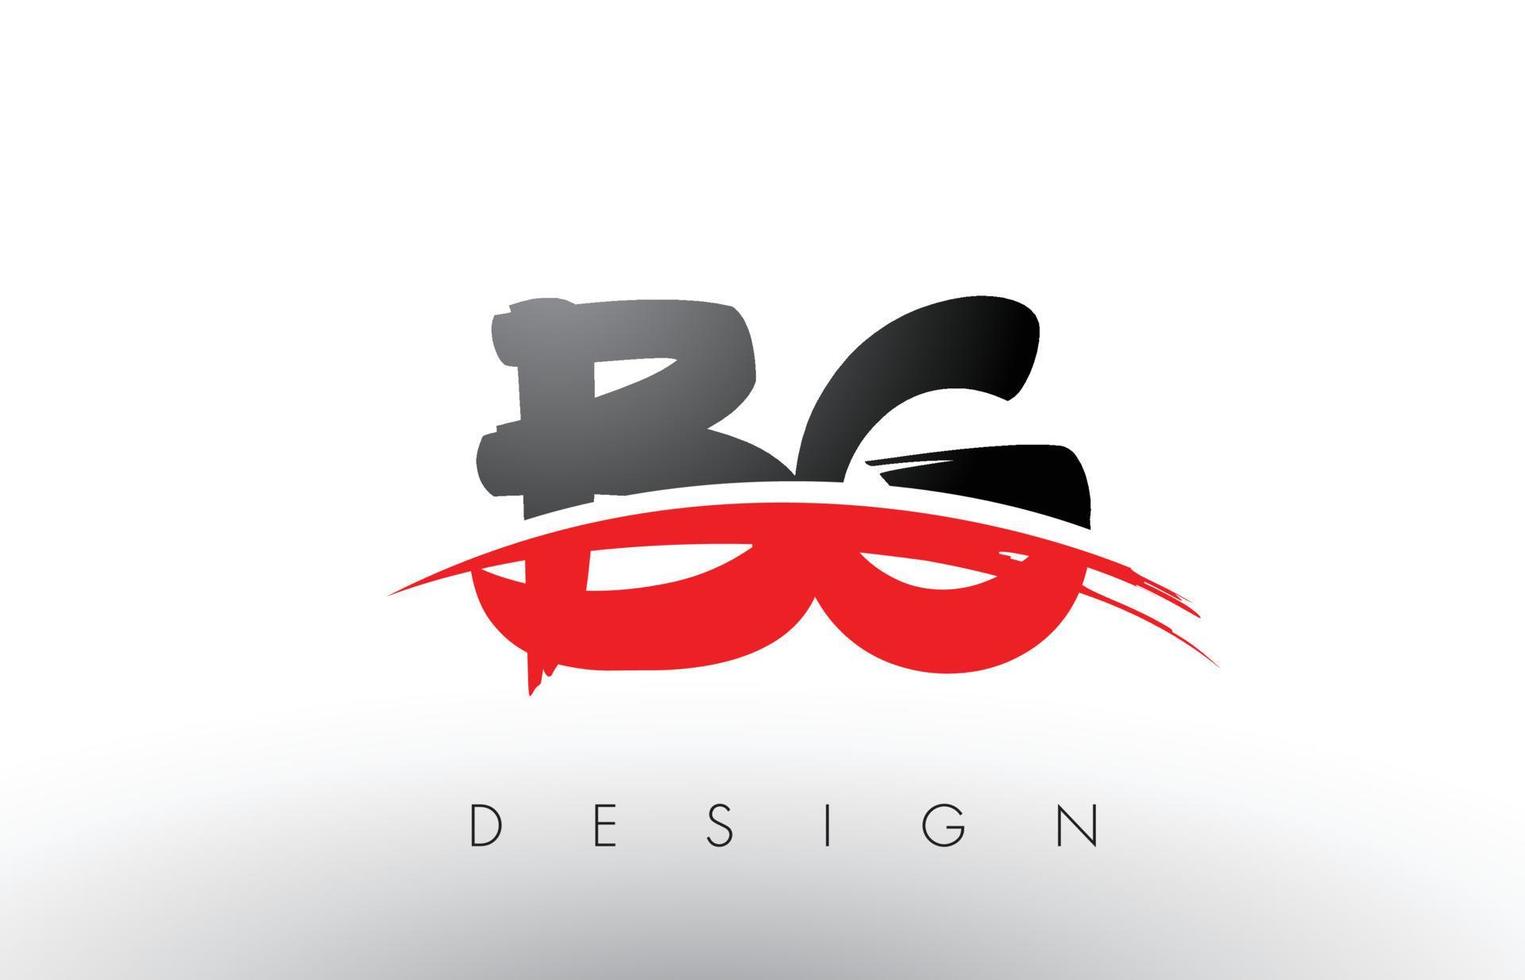 letras del logotipo del cepillo bg bg con frente de cepillo swoosh rojo y negro vector